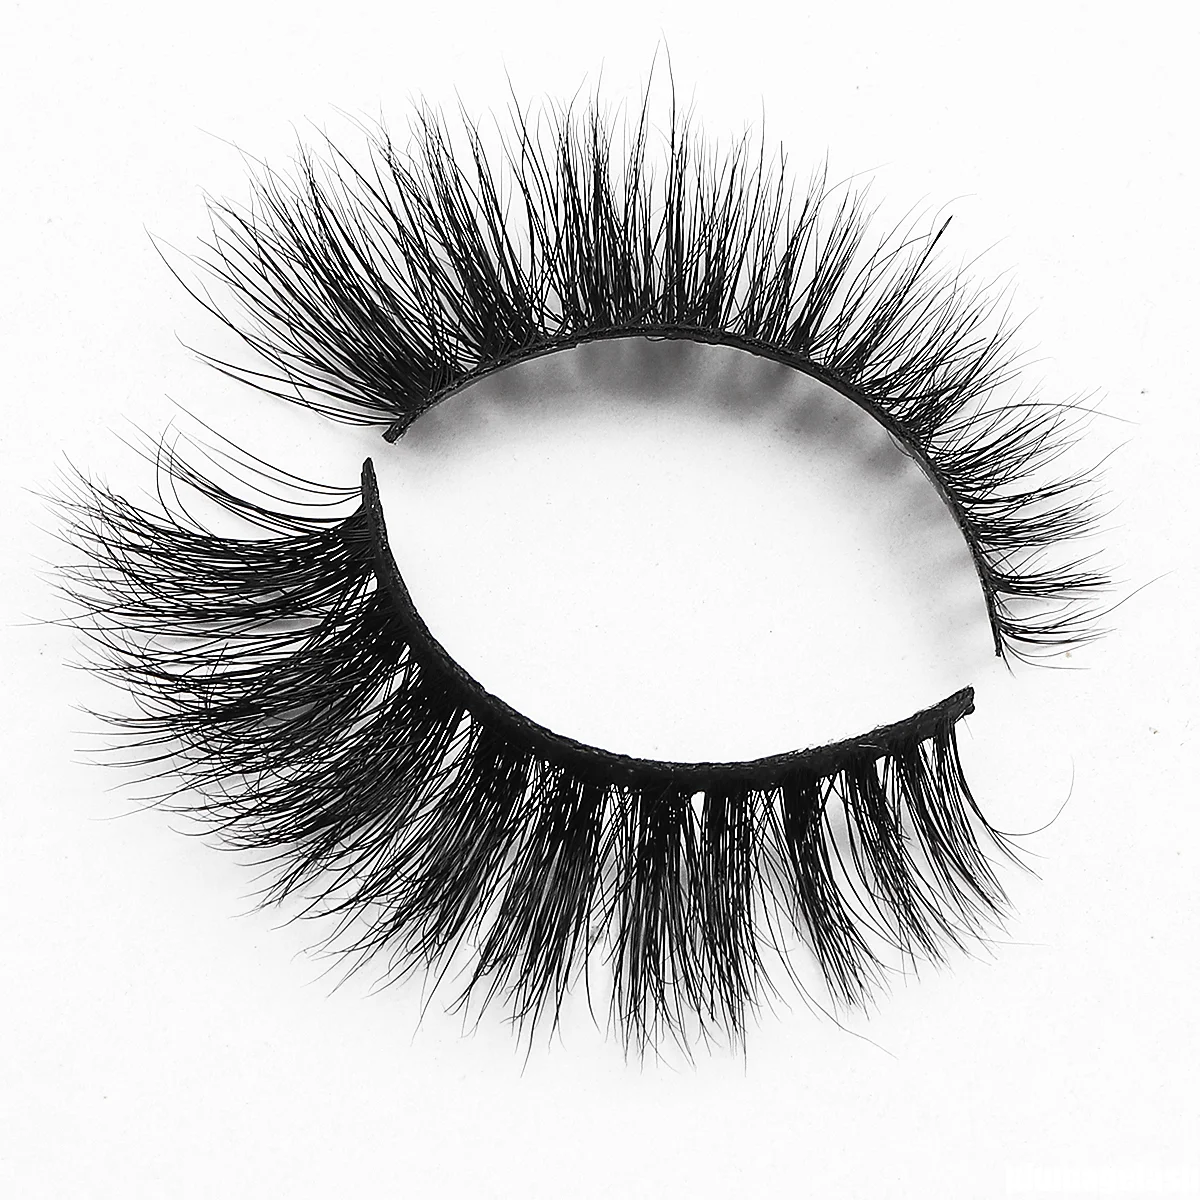 Best quality eyelash strip Own Brand 3D Mink Eyelashes